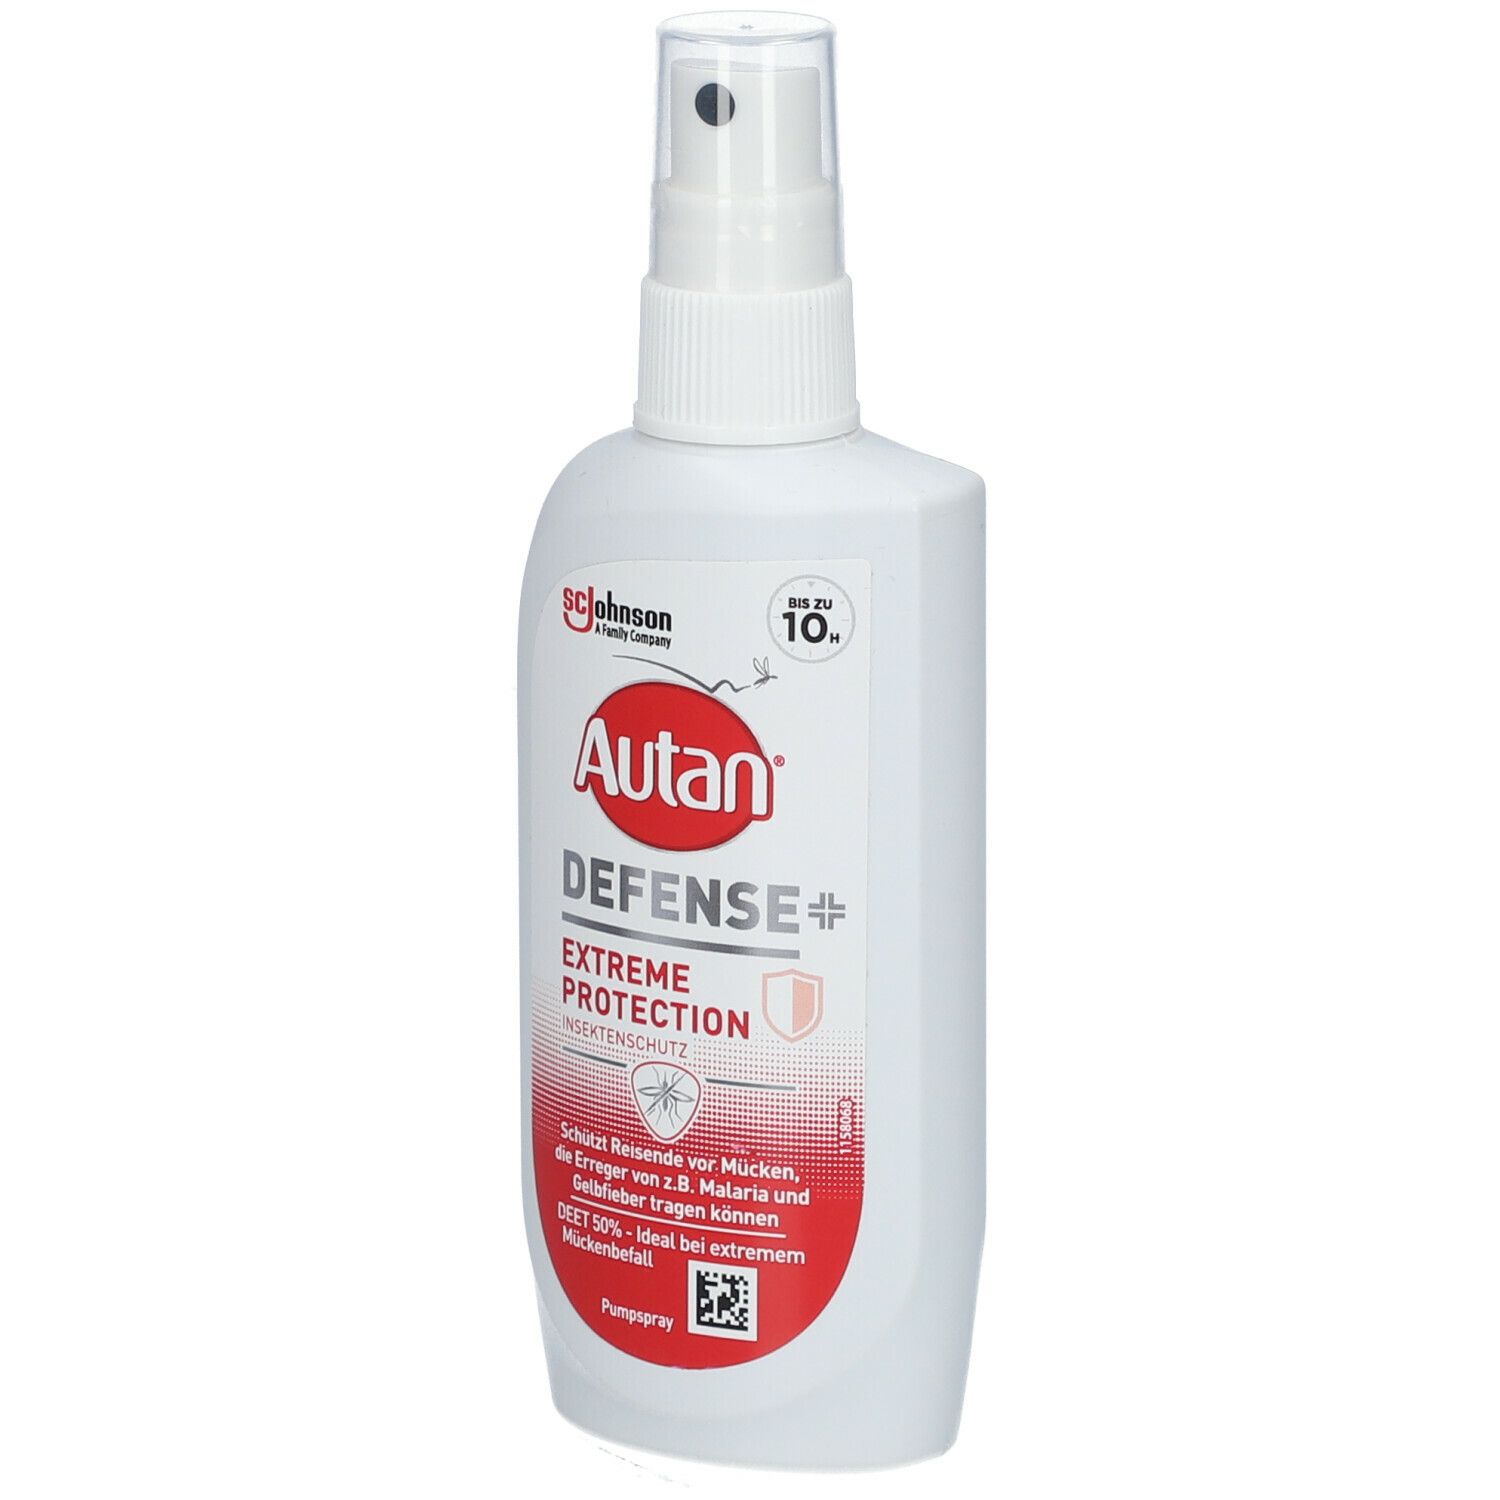 Autan® Defense Extreme Protection